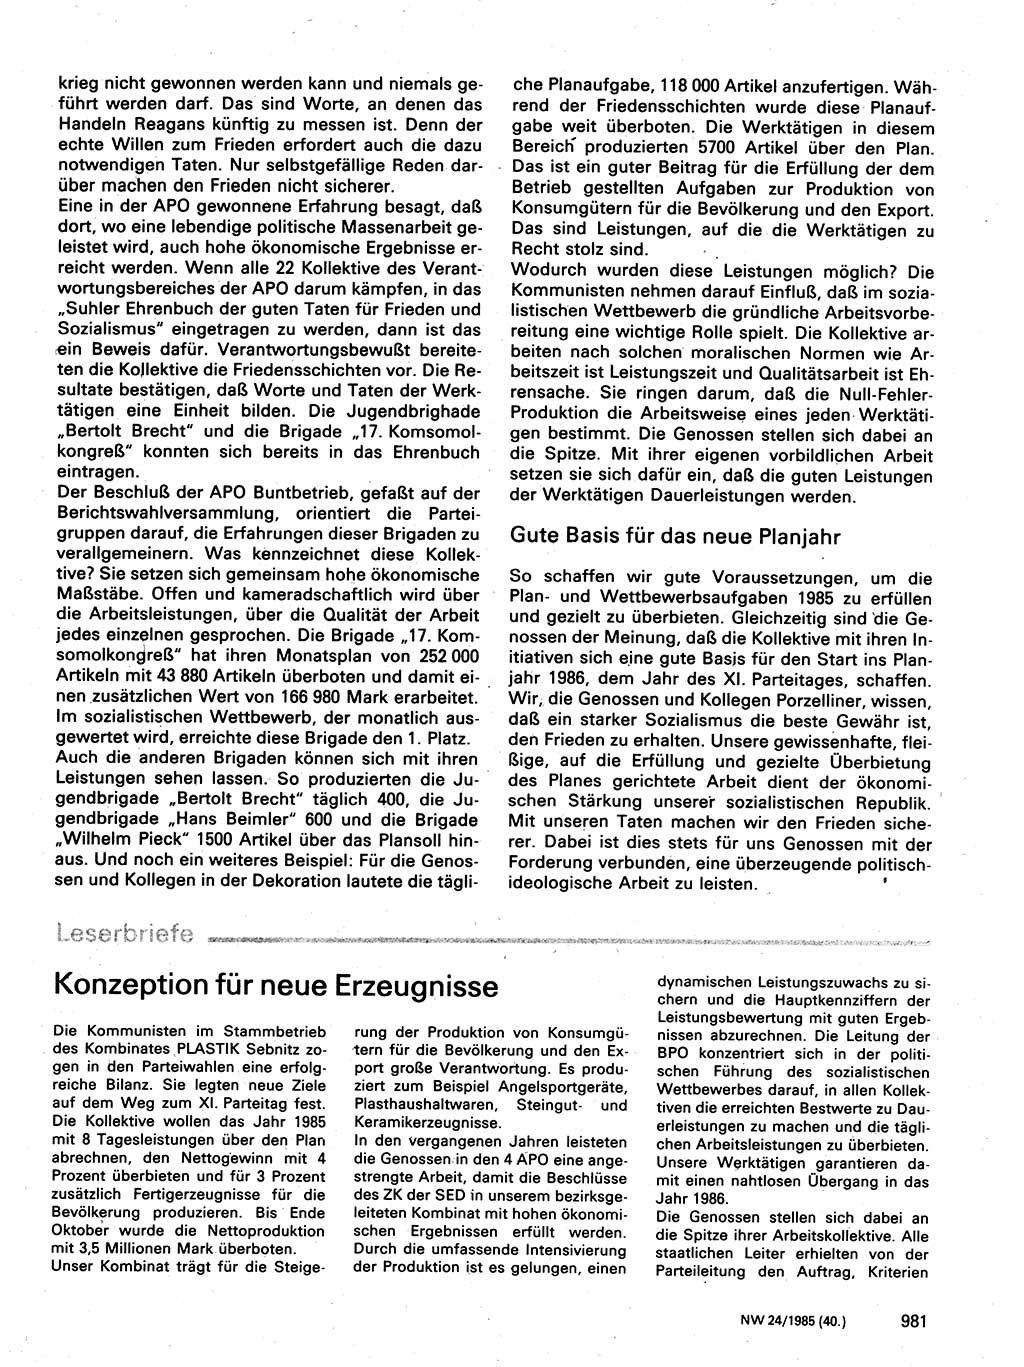 Neuer Weg (NW), Organ des Zentralkomitees (ZK) der SED (Sozialistische Einheitspartei Deutschlands) fÃ¼r Fragen des Parteilebens, 40. Jahrgang [Deutsche Demokratische Republik (DDR)] 1985, Seite 981 (NW ZK SED DDR 1985, S. 981)